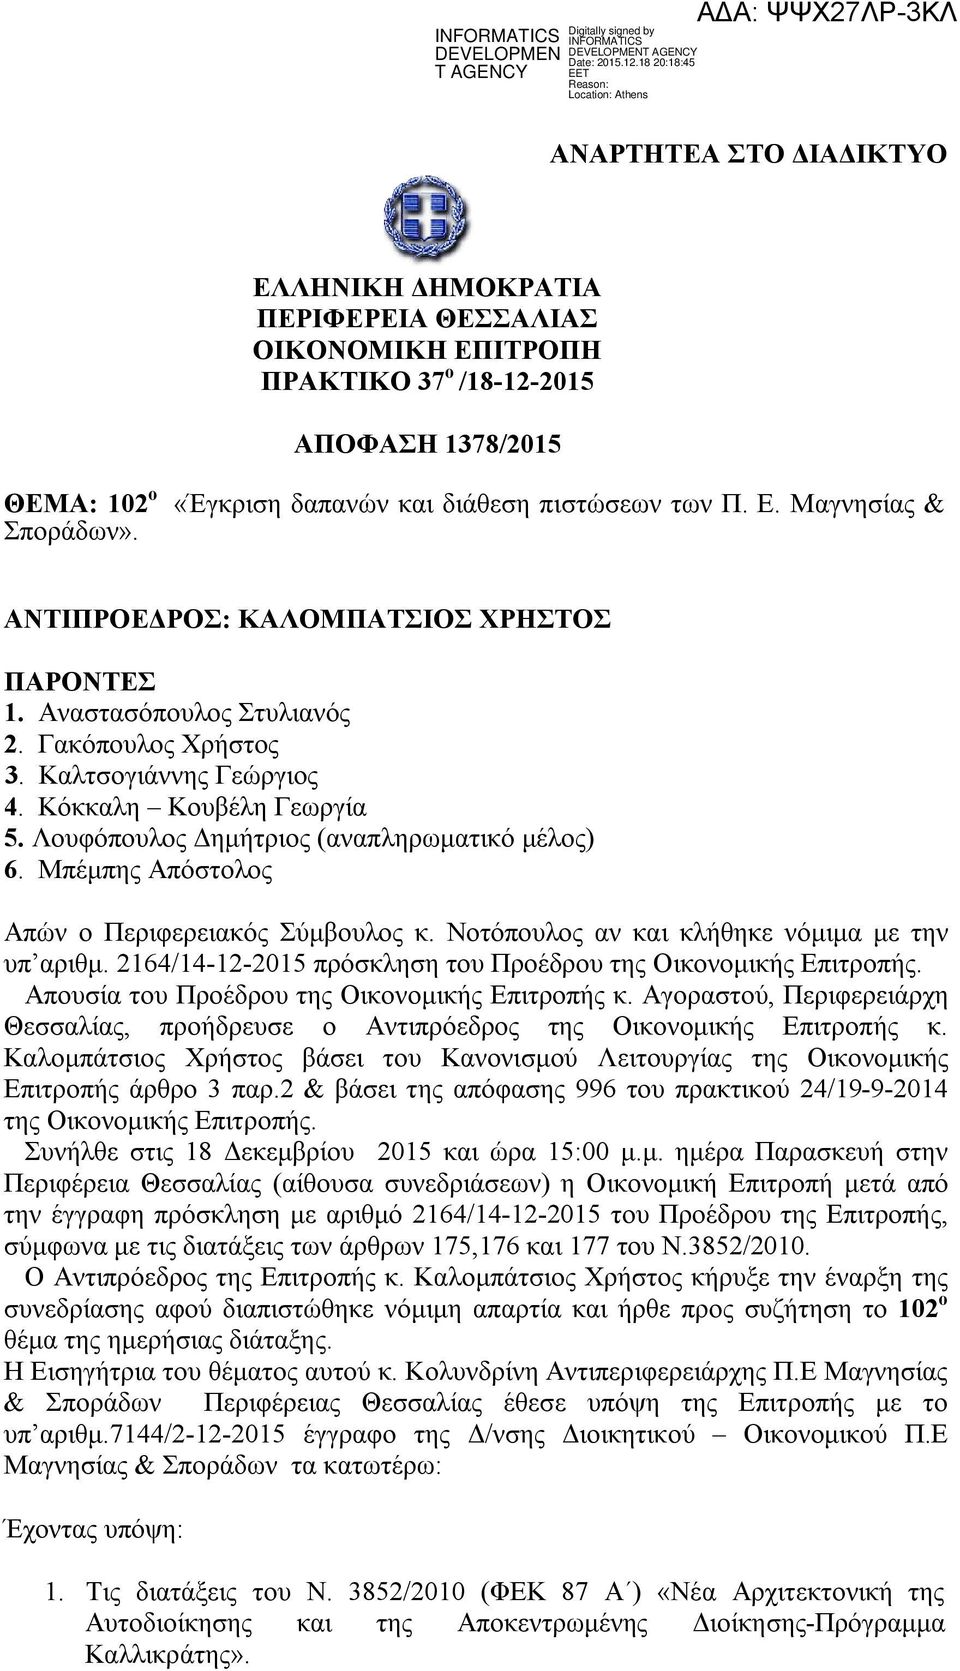 Μπέμπης Απόστολος Απών ο Περιφερειακός Σύμβουλος κ. Νοτόπουλος αν και κλήθηκε νόμιμα με την υπ αριθμ. 2164/14-12-2015 πρόσκληση του Προέδρου της Οικονομικής Επιτροπής.